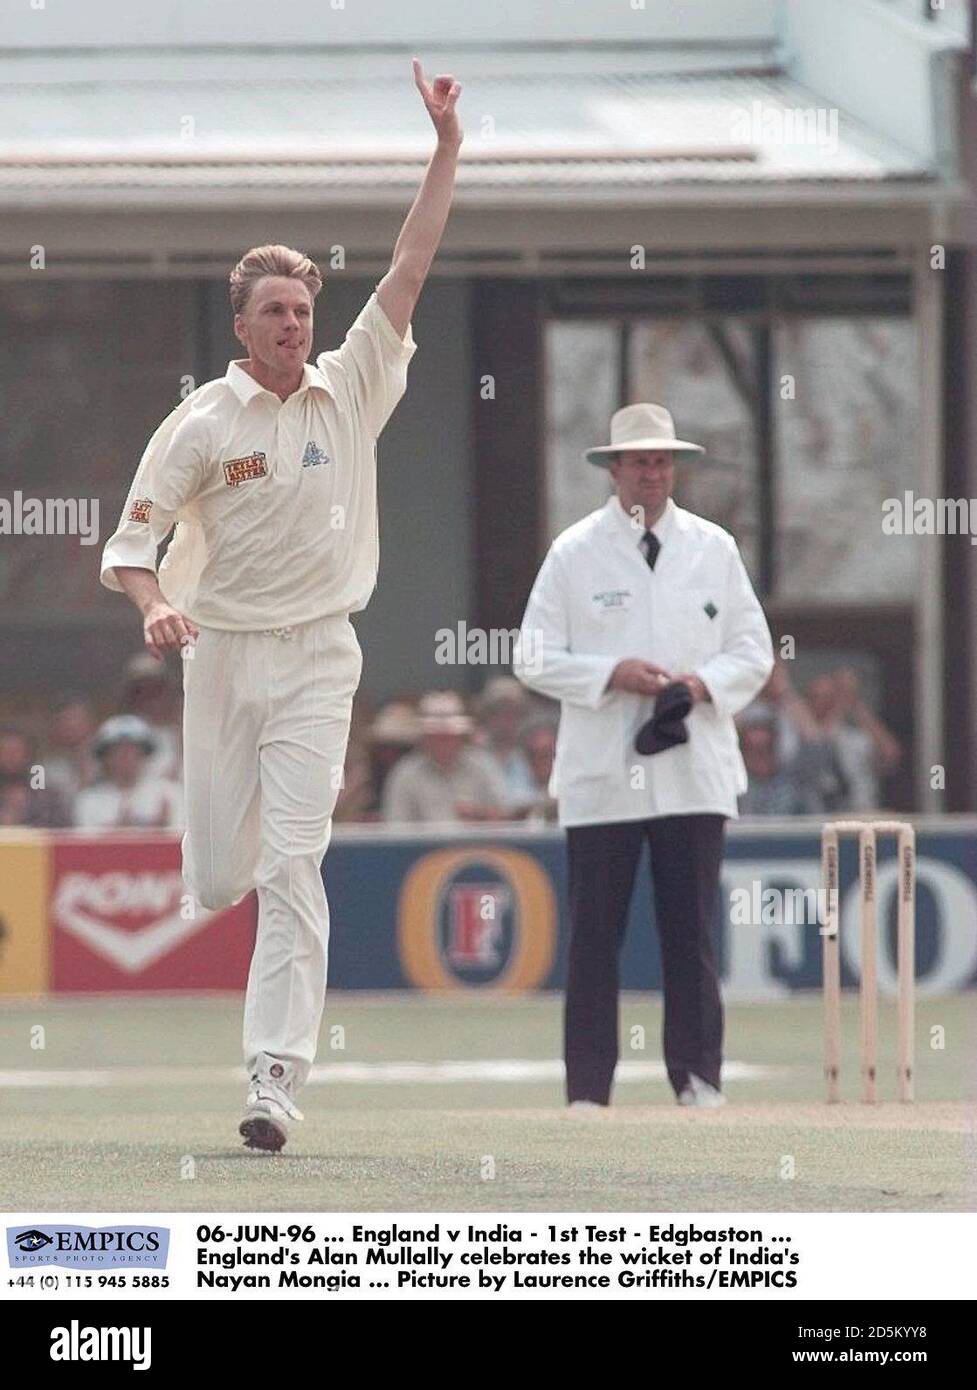 06-JUN-96 ... England gegen Indien - 1. Test - Edgbaston ... Englands Alan Mullally feiert das Wicket der indischen Nayan Mongia ... Bild von Laurence Griffiths/EMPICS Stockfoto